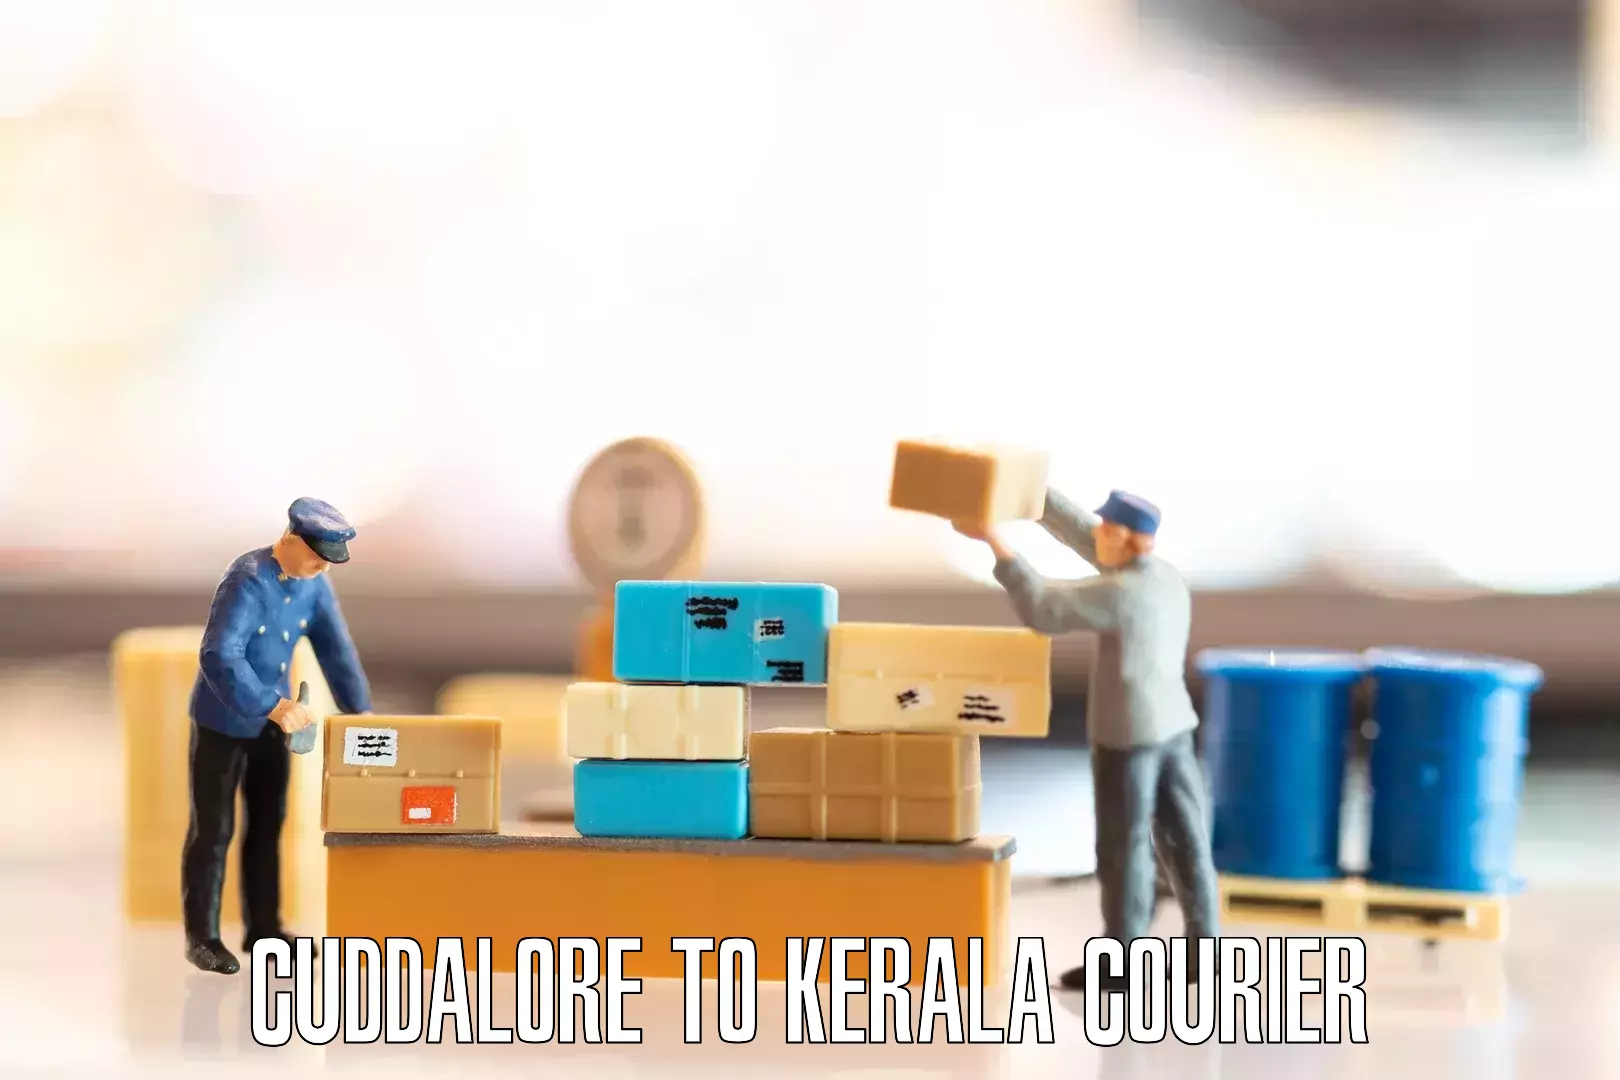 Quick relocation services Cuddalore to Cochin Port Kochi